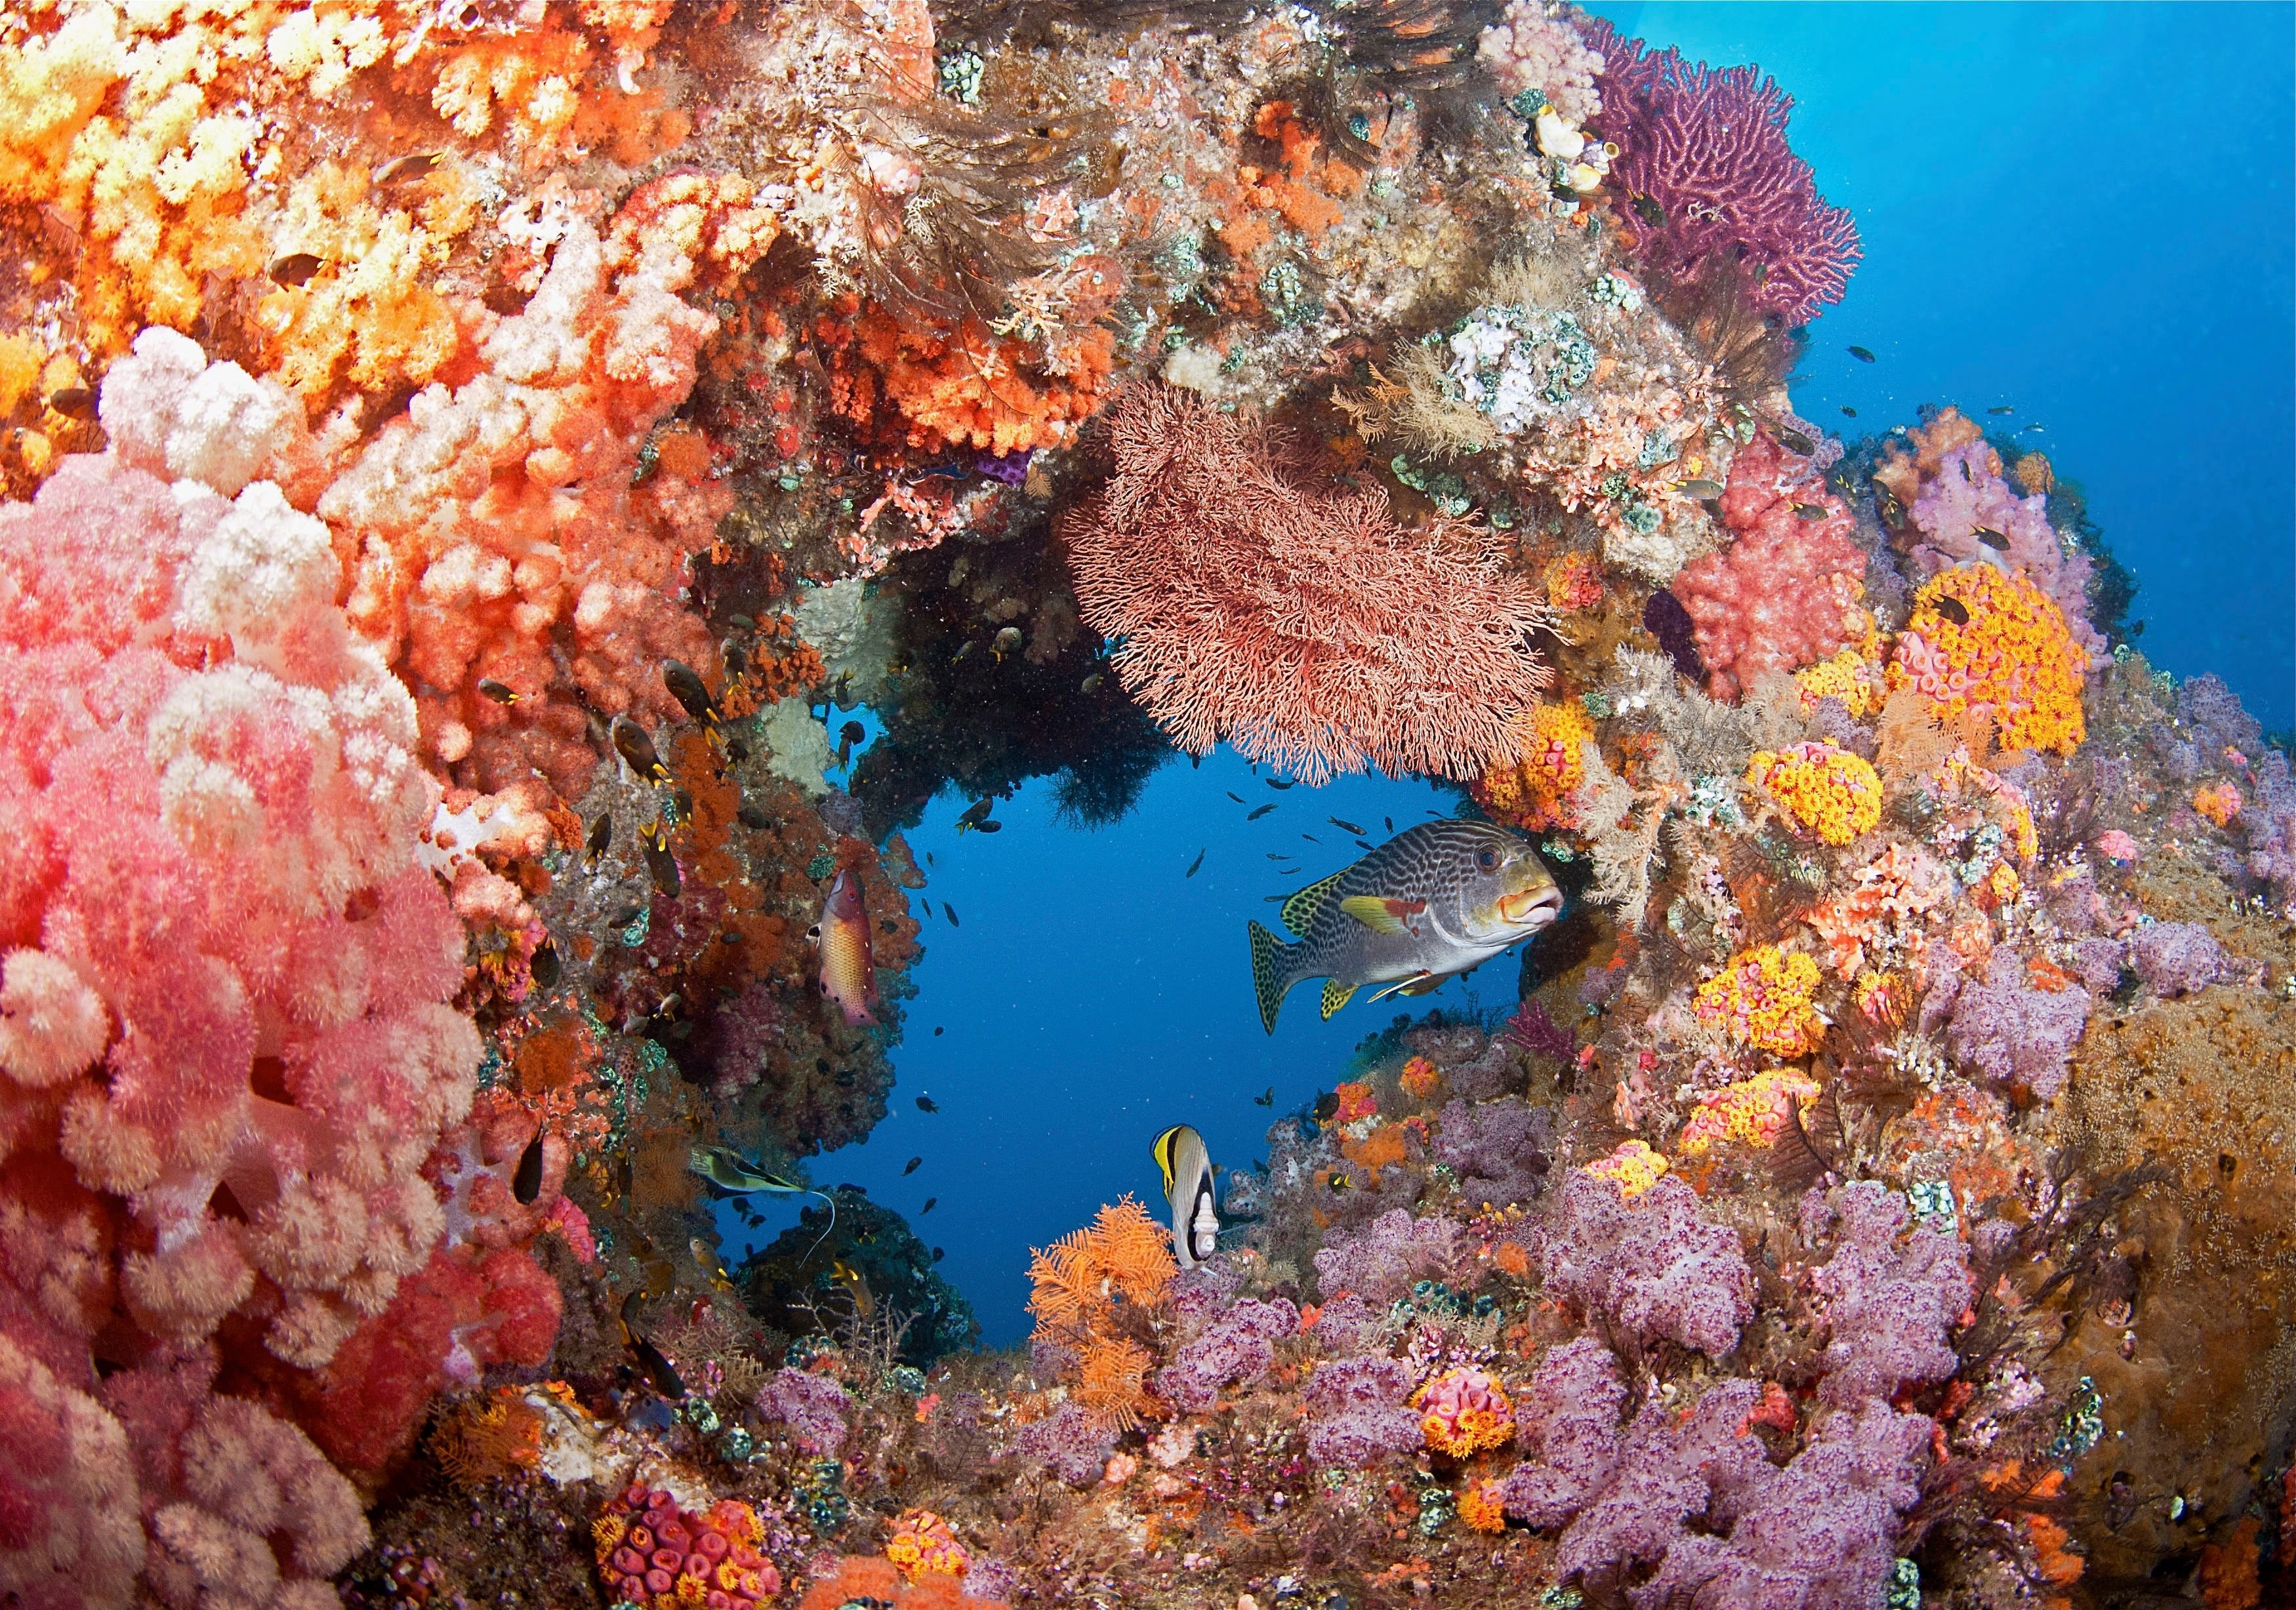 Coral video. Крылатка рыба Шарм Эль Шейх. Раджа-Ампат рифы. Коралловое море Барьерный риф. Коралловый риф в Шарм Эль Шейхе.